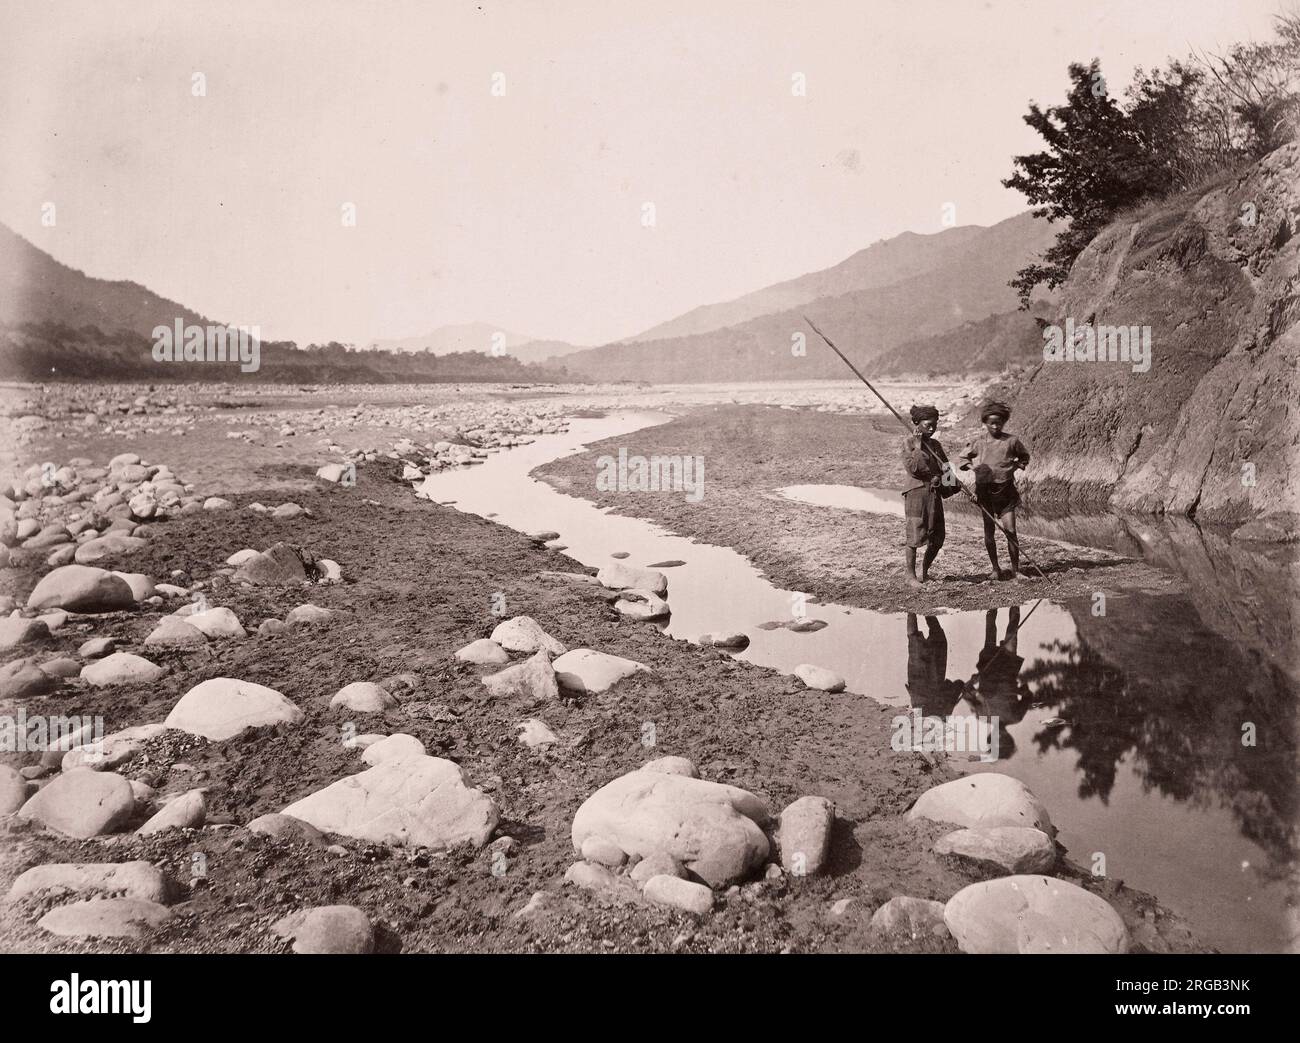 John Thomson (14 juin 1837 - 29 septembre 1921) photographe écossais, actif en Chine vers 1870, tiré d'un album de ses images : Lalung River, Formosa, Taïwan Banque D'Images